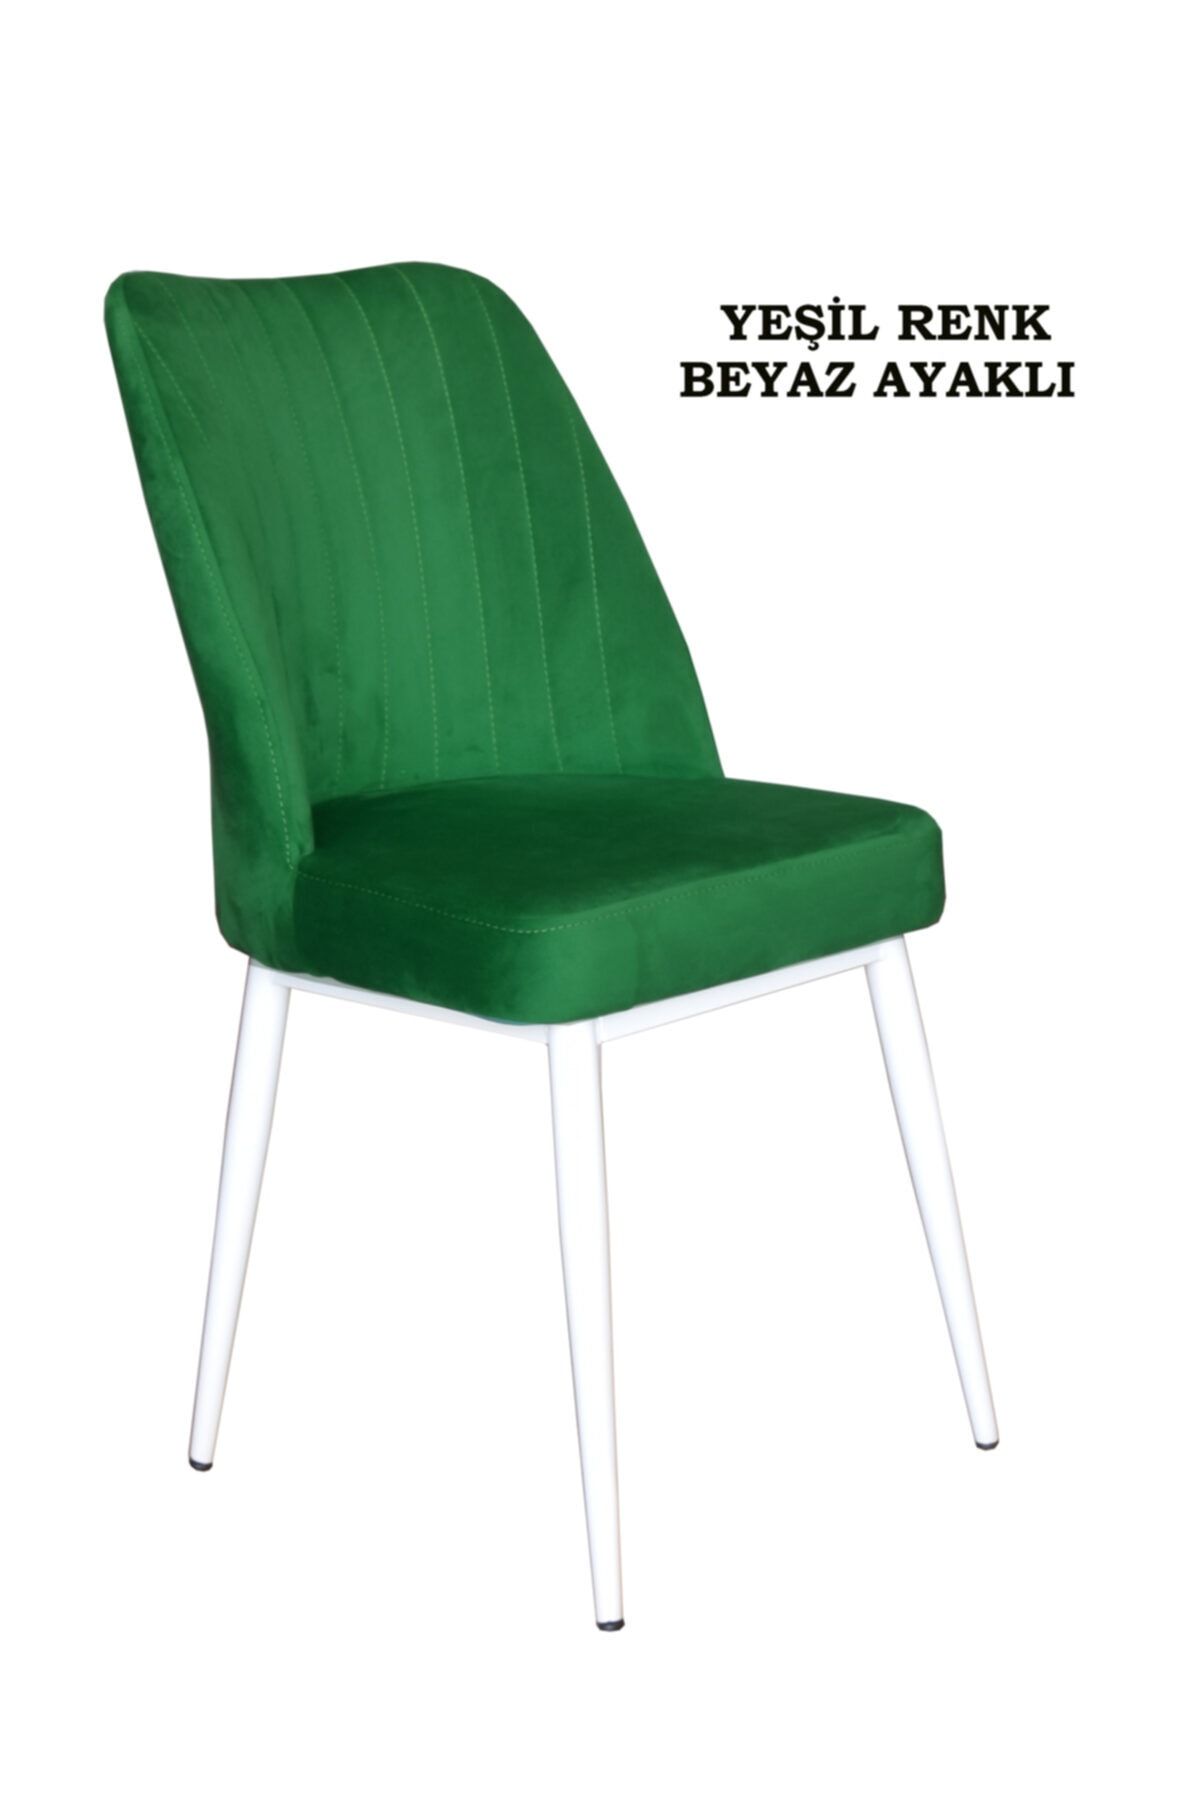 Ankhira Elit Sandalye, Mutfak Ve Salon Sandalyesi, Silinebilir Yeşil Renk Kumaş, Beyaz Ayaklı